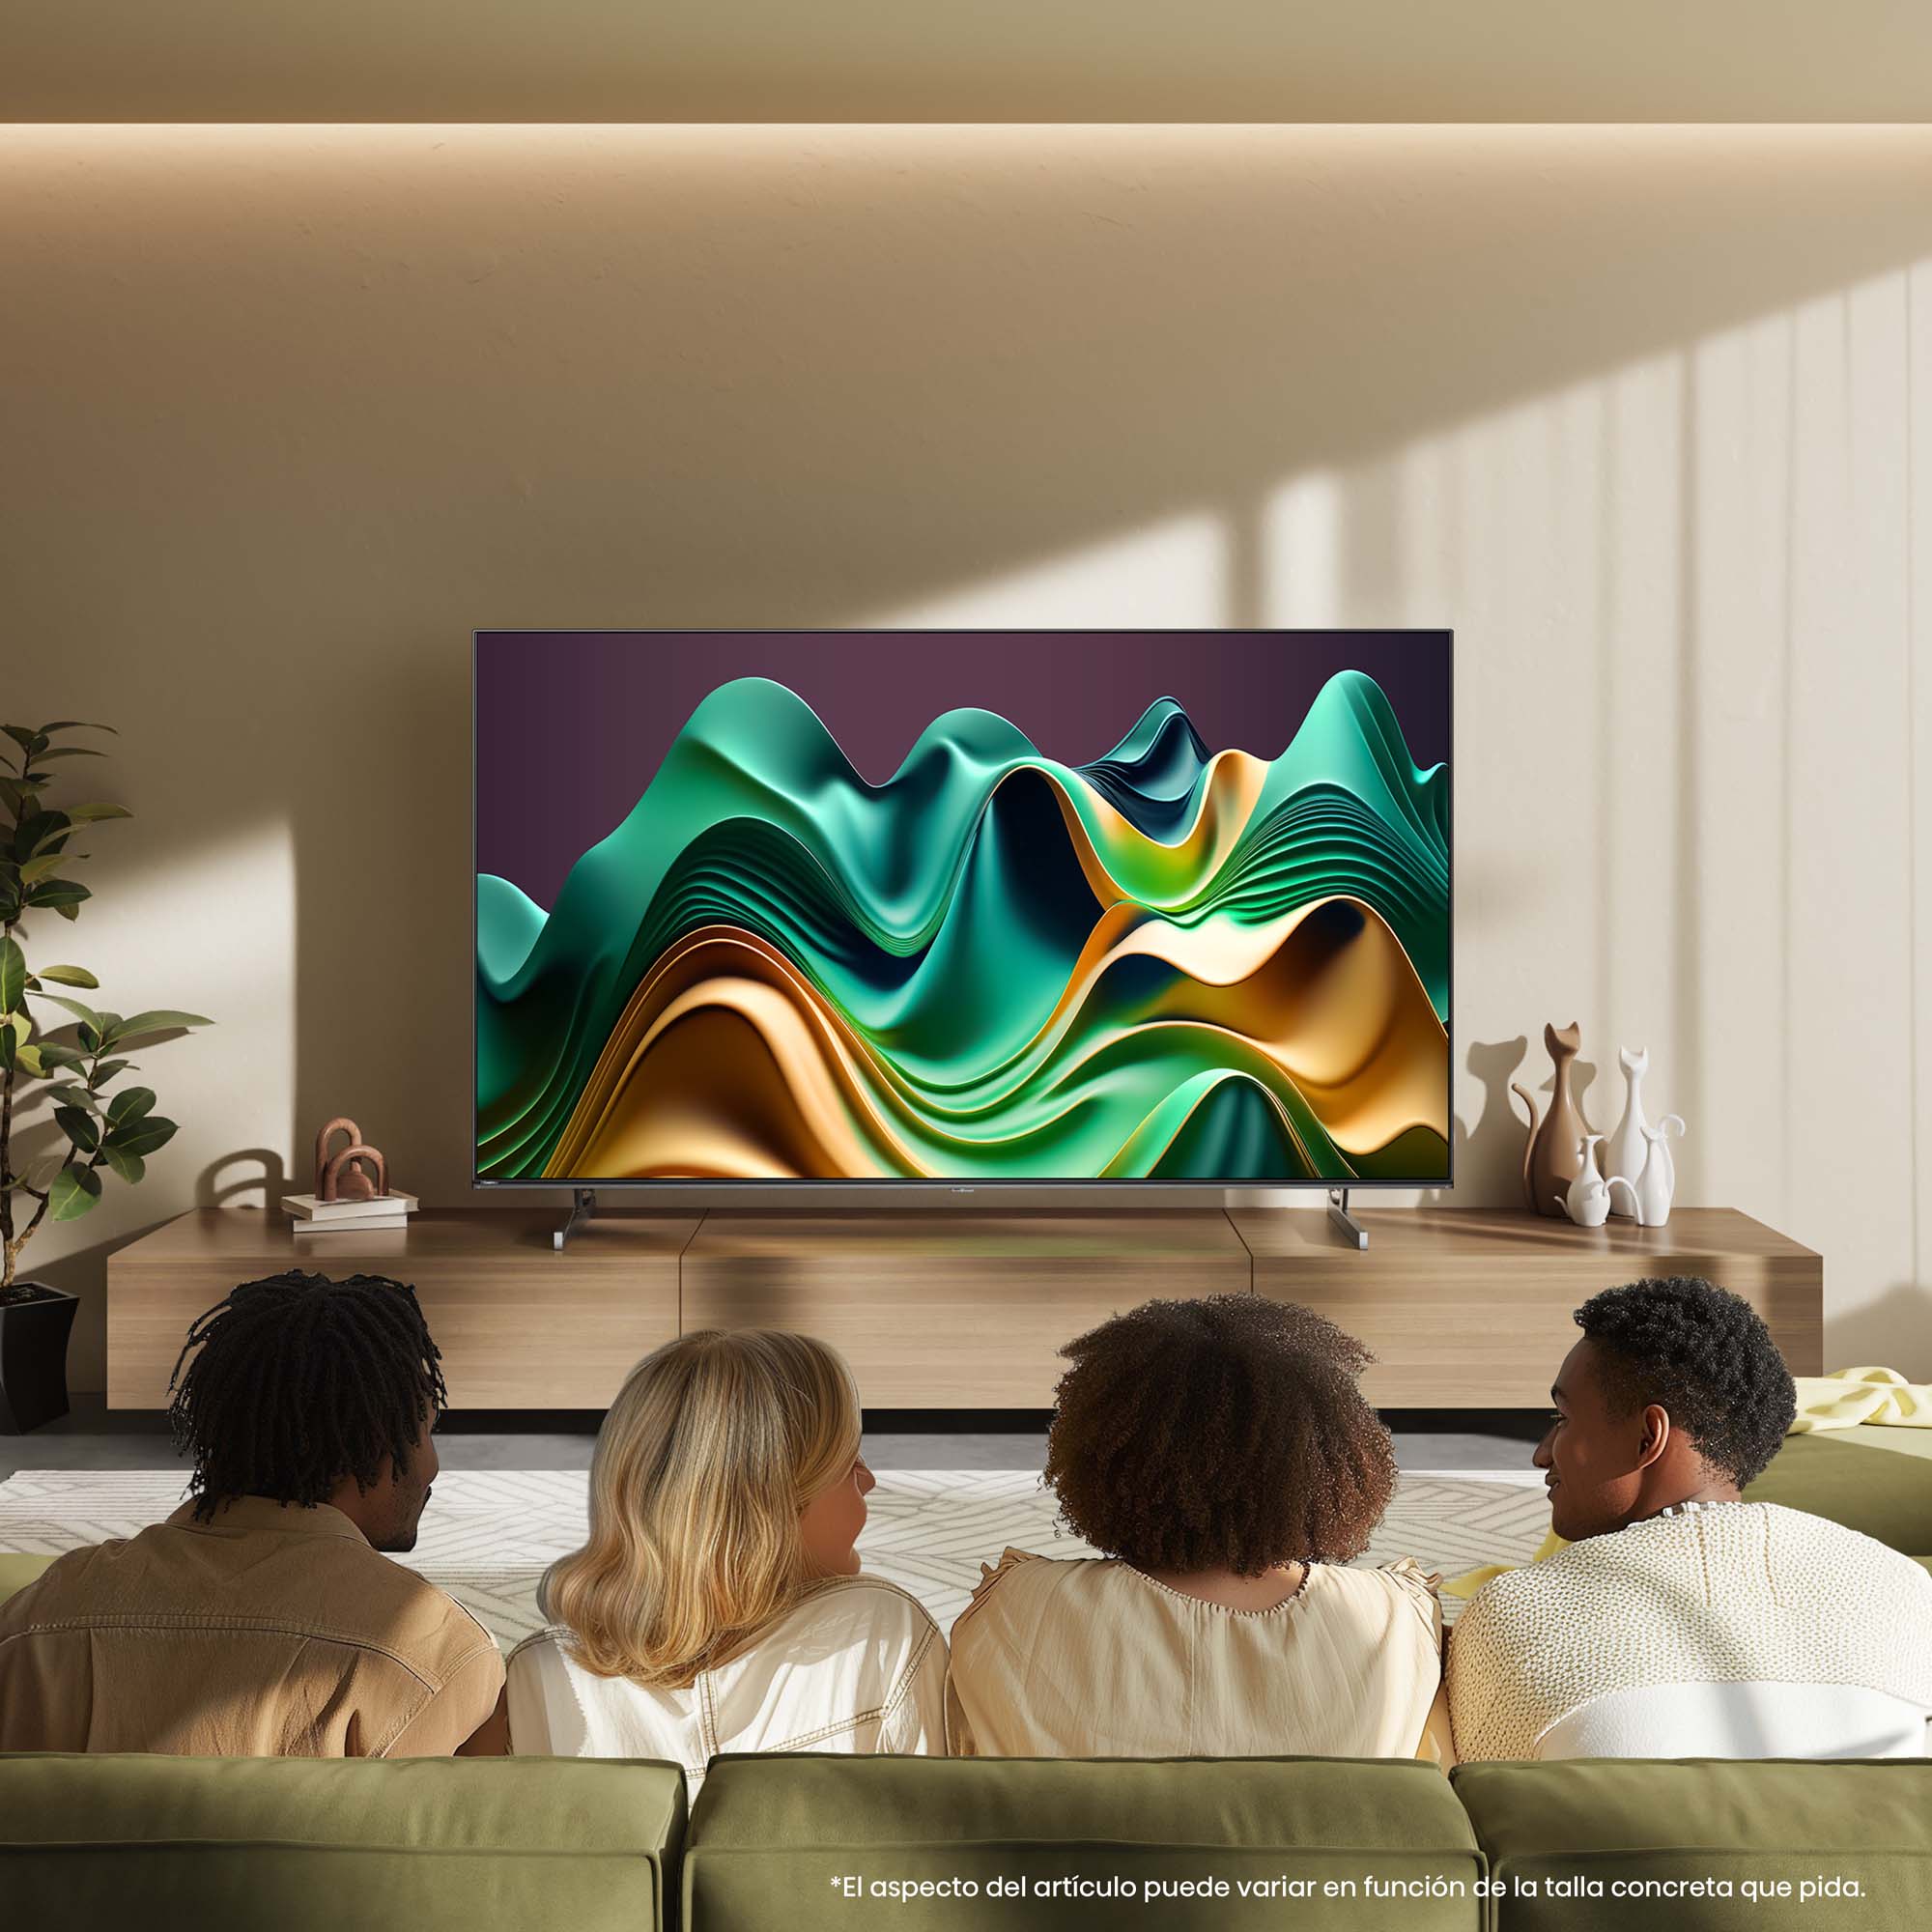 Hisense - Mini-LED TV U6NQ con Quantum Dot Colour